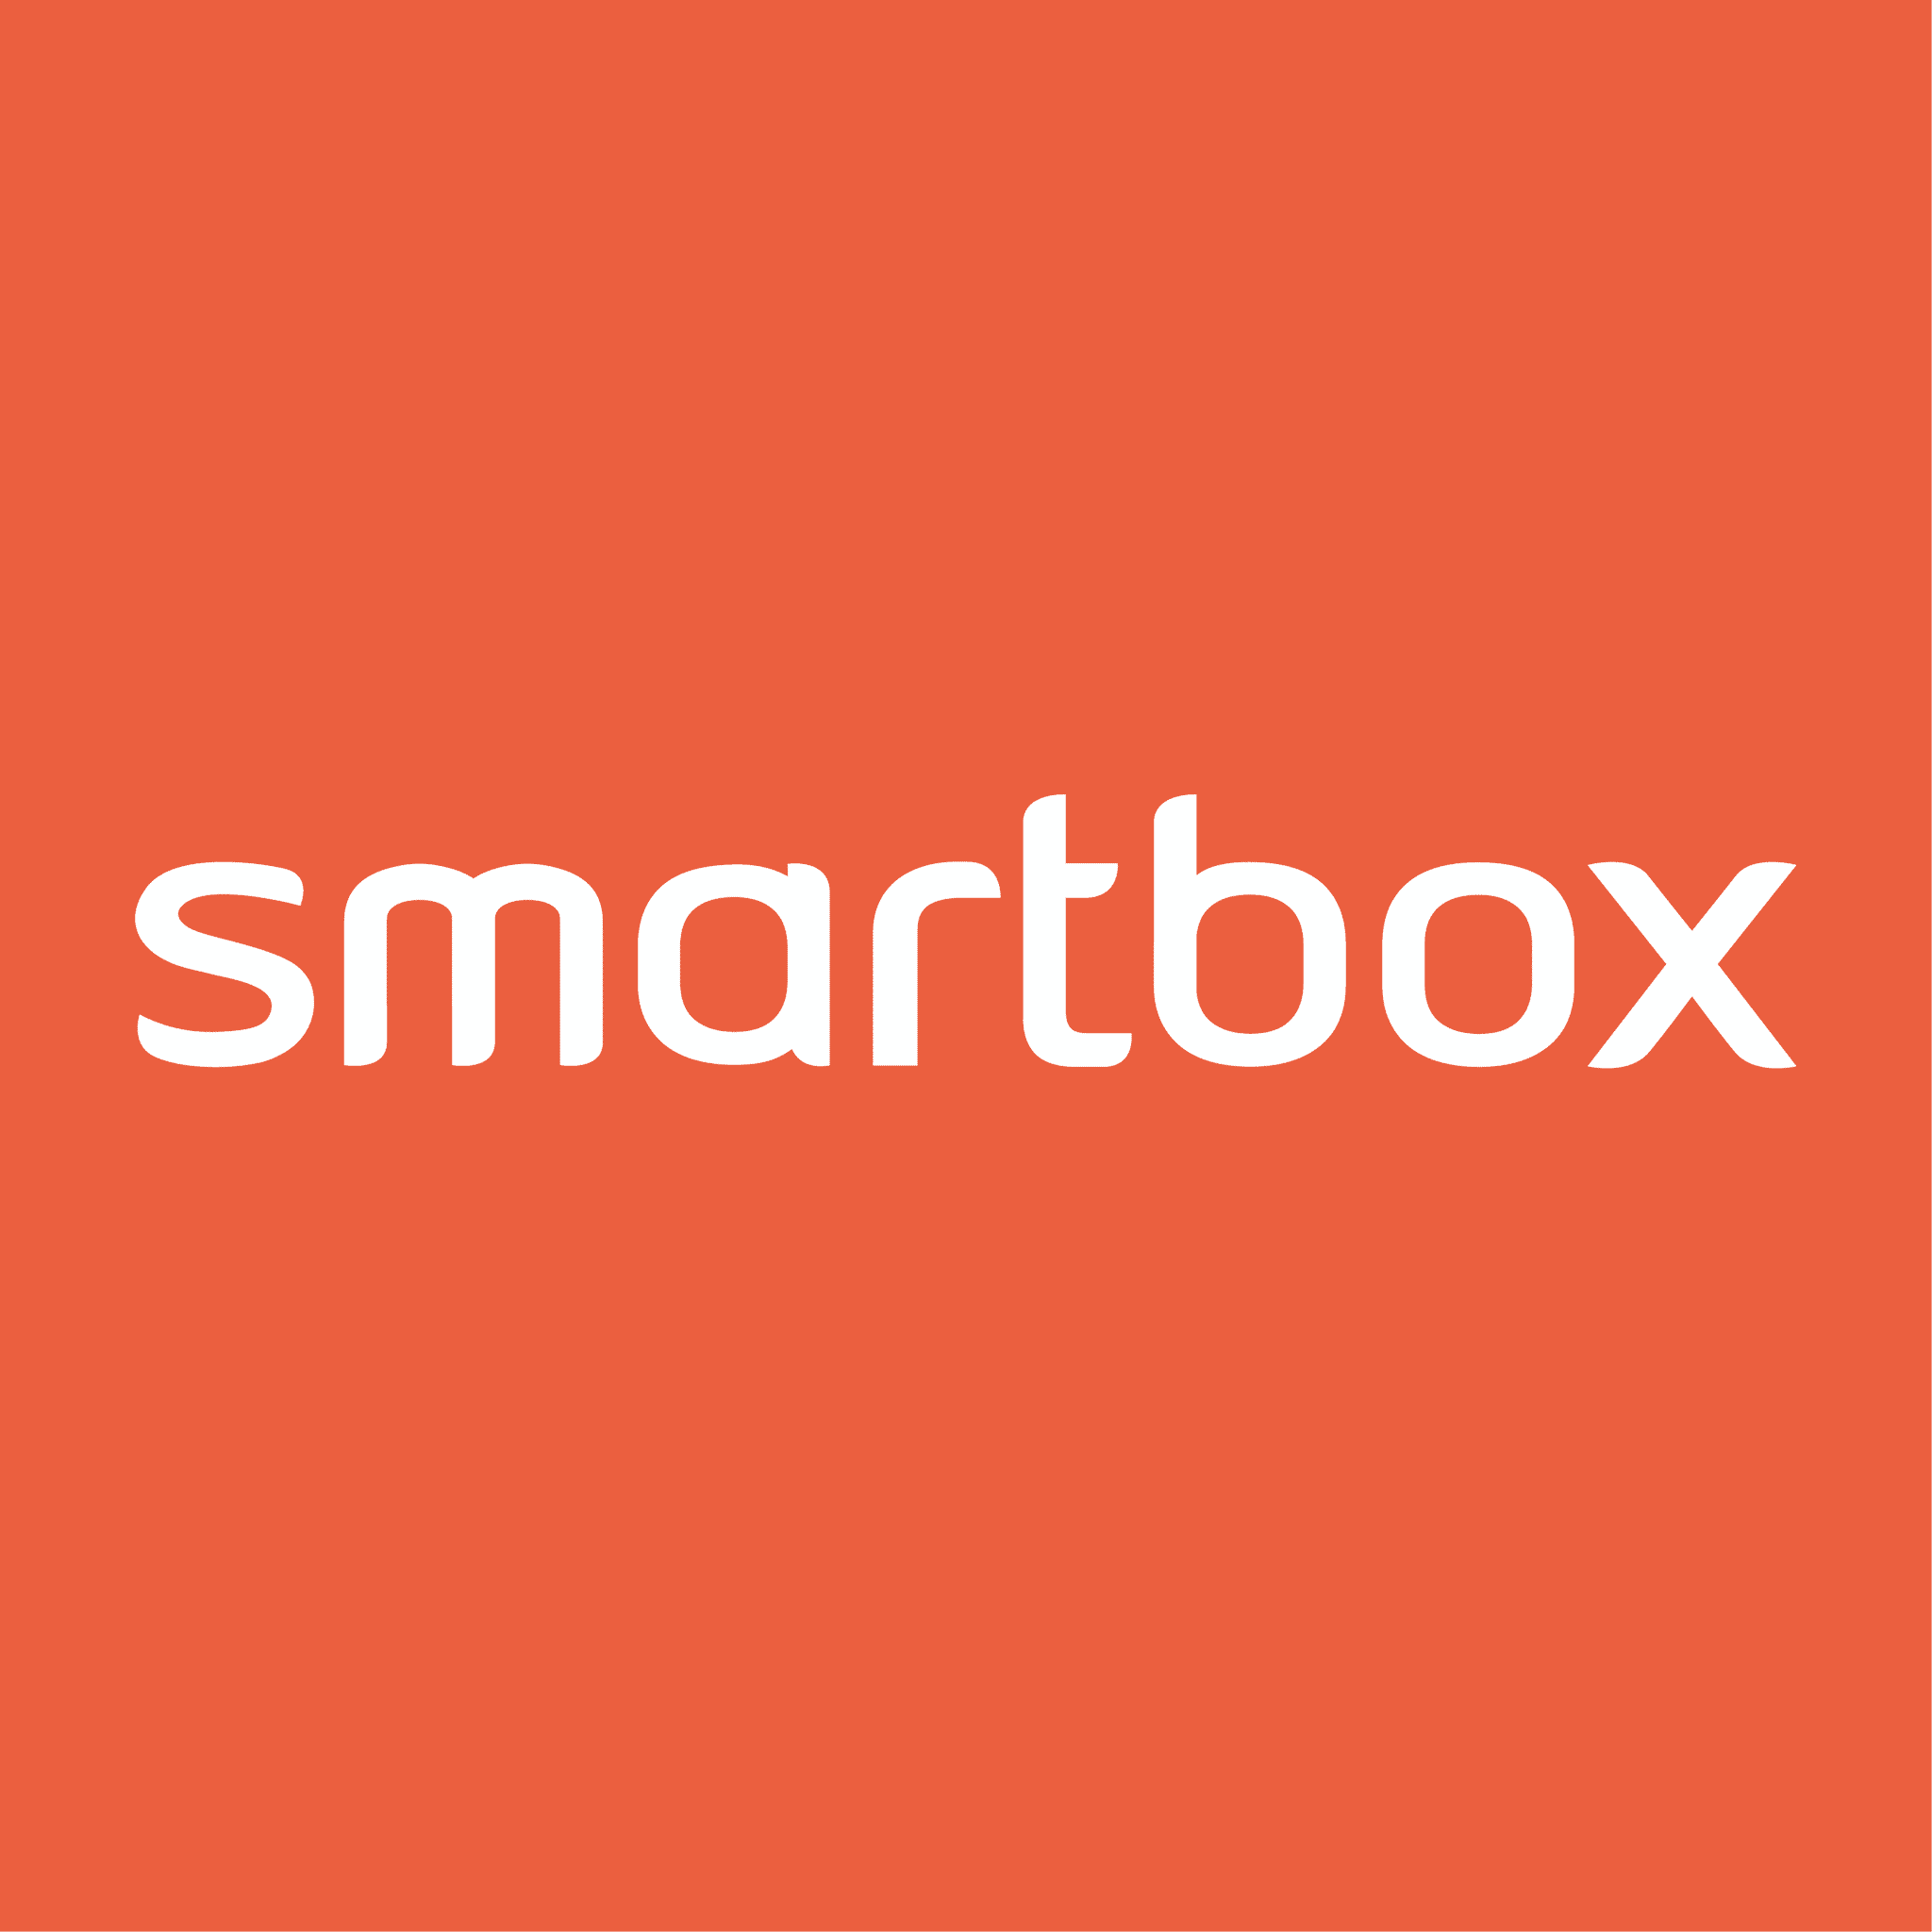 Smartbox : tout savoir sur les coffrets cadeaux, avis et tests